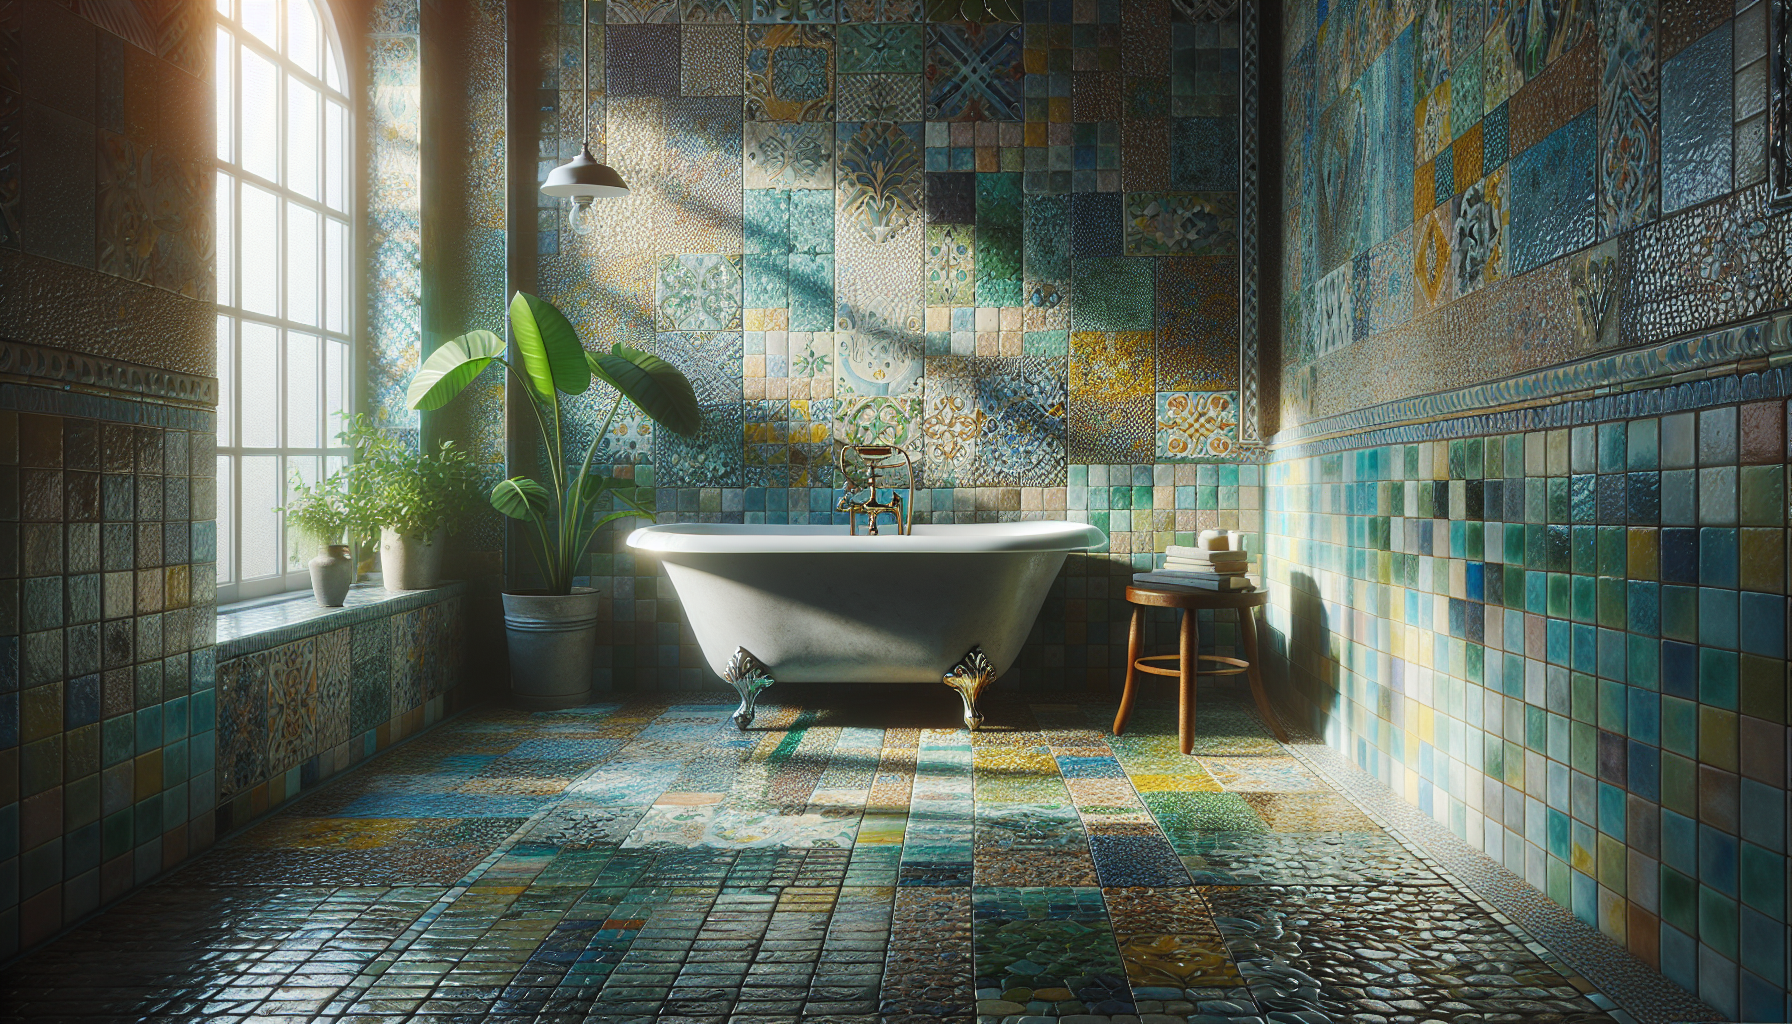 Kombination von Farben und Texturen für individuelle Badezimmergestaltung